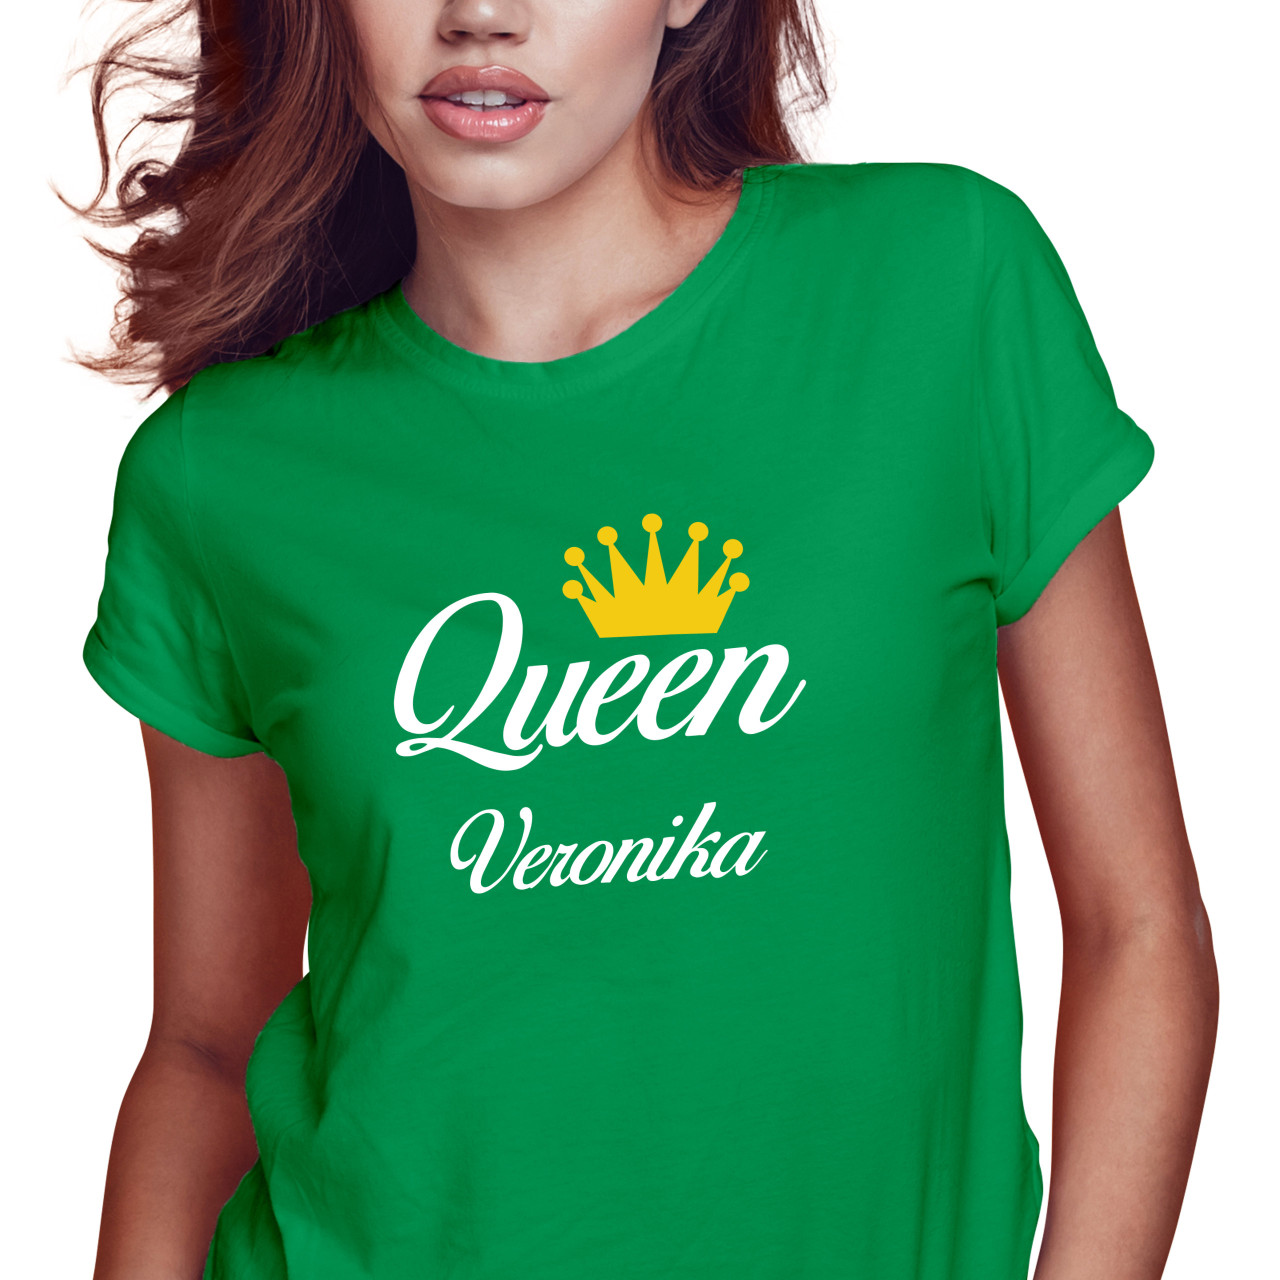 Dámské tričko s potiskem “Queen” s vlastním jménem